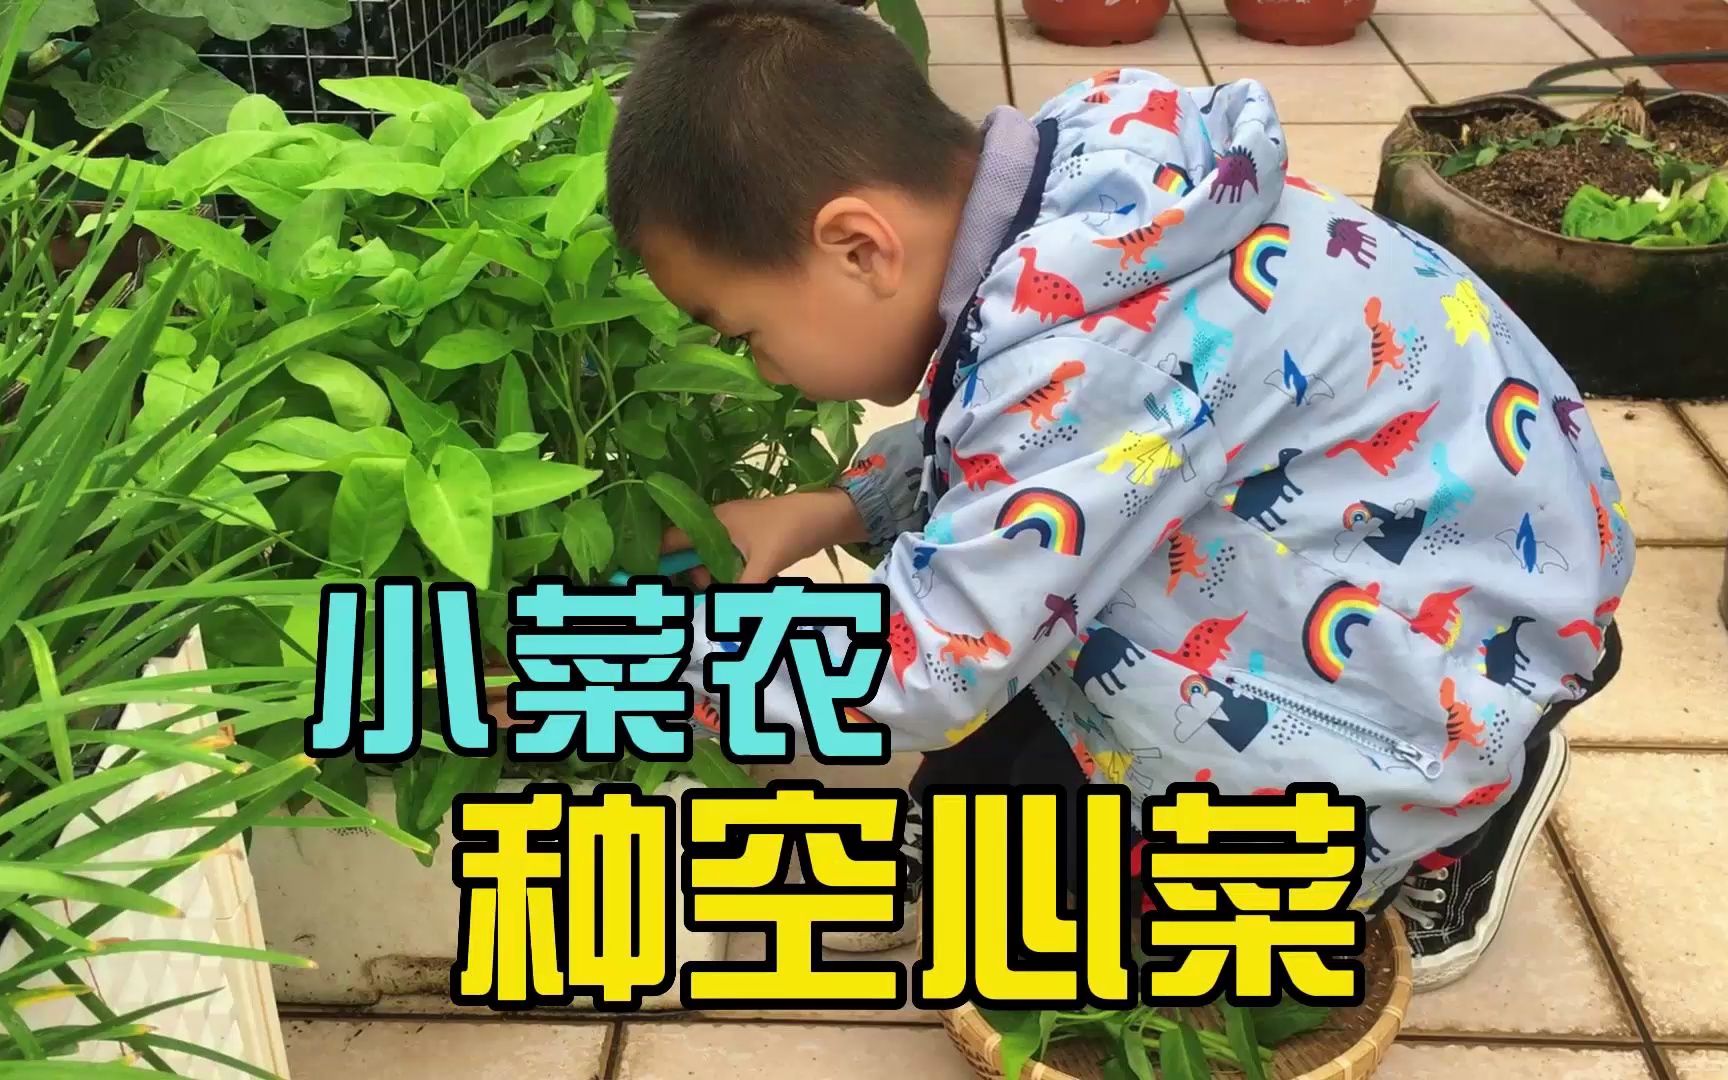 寻找幼儿园里的蔬菜 - 科学 - 湖州市吴兴区织里镇织北幼儿园